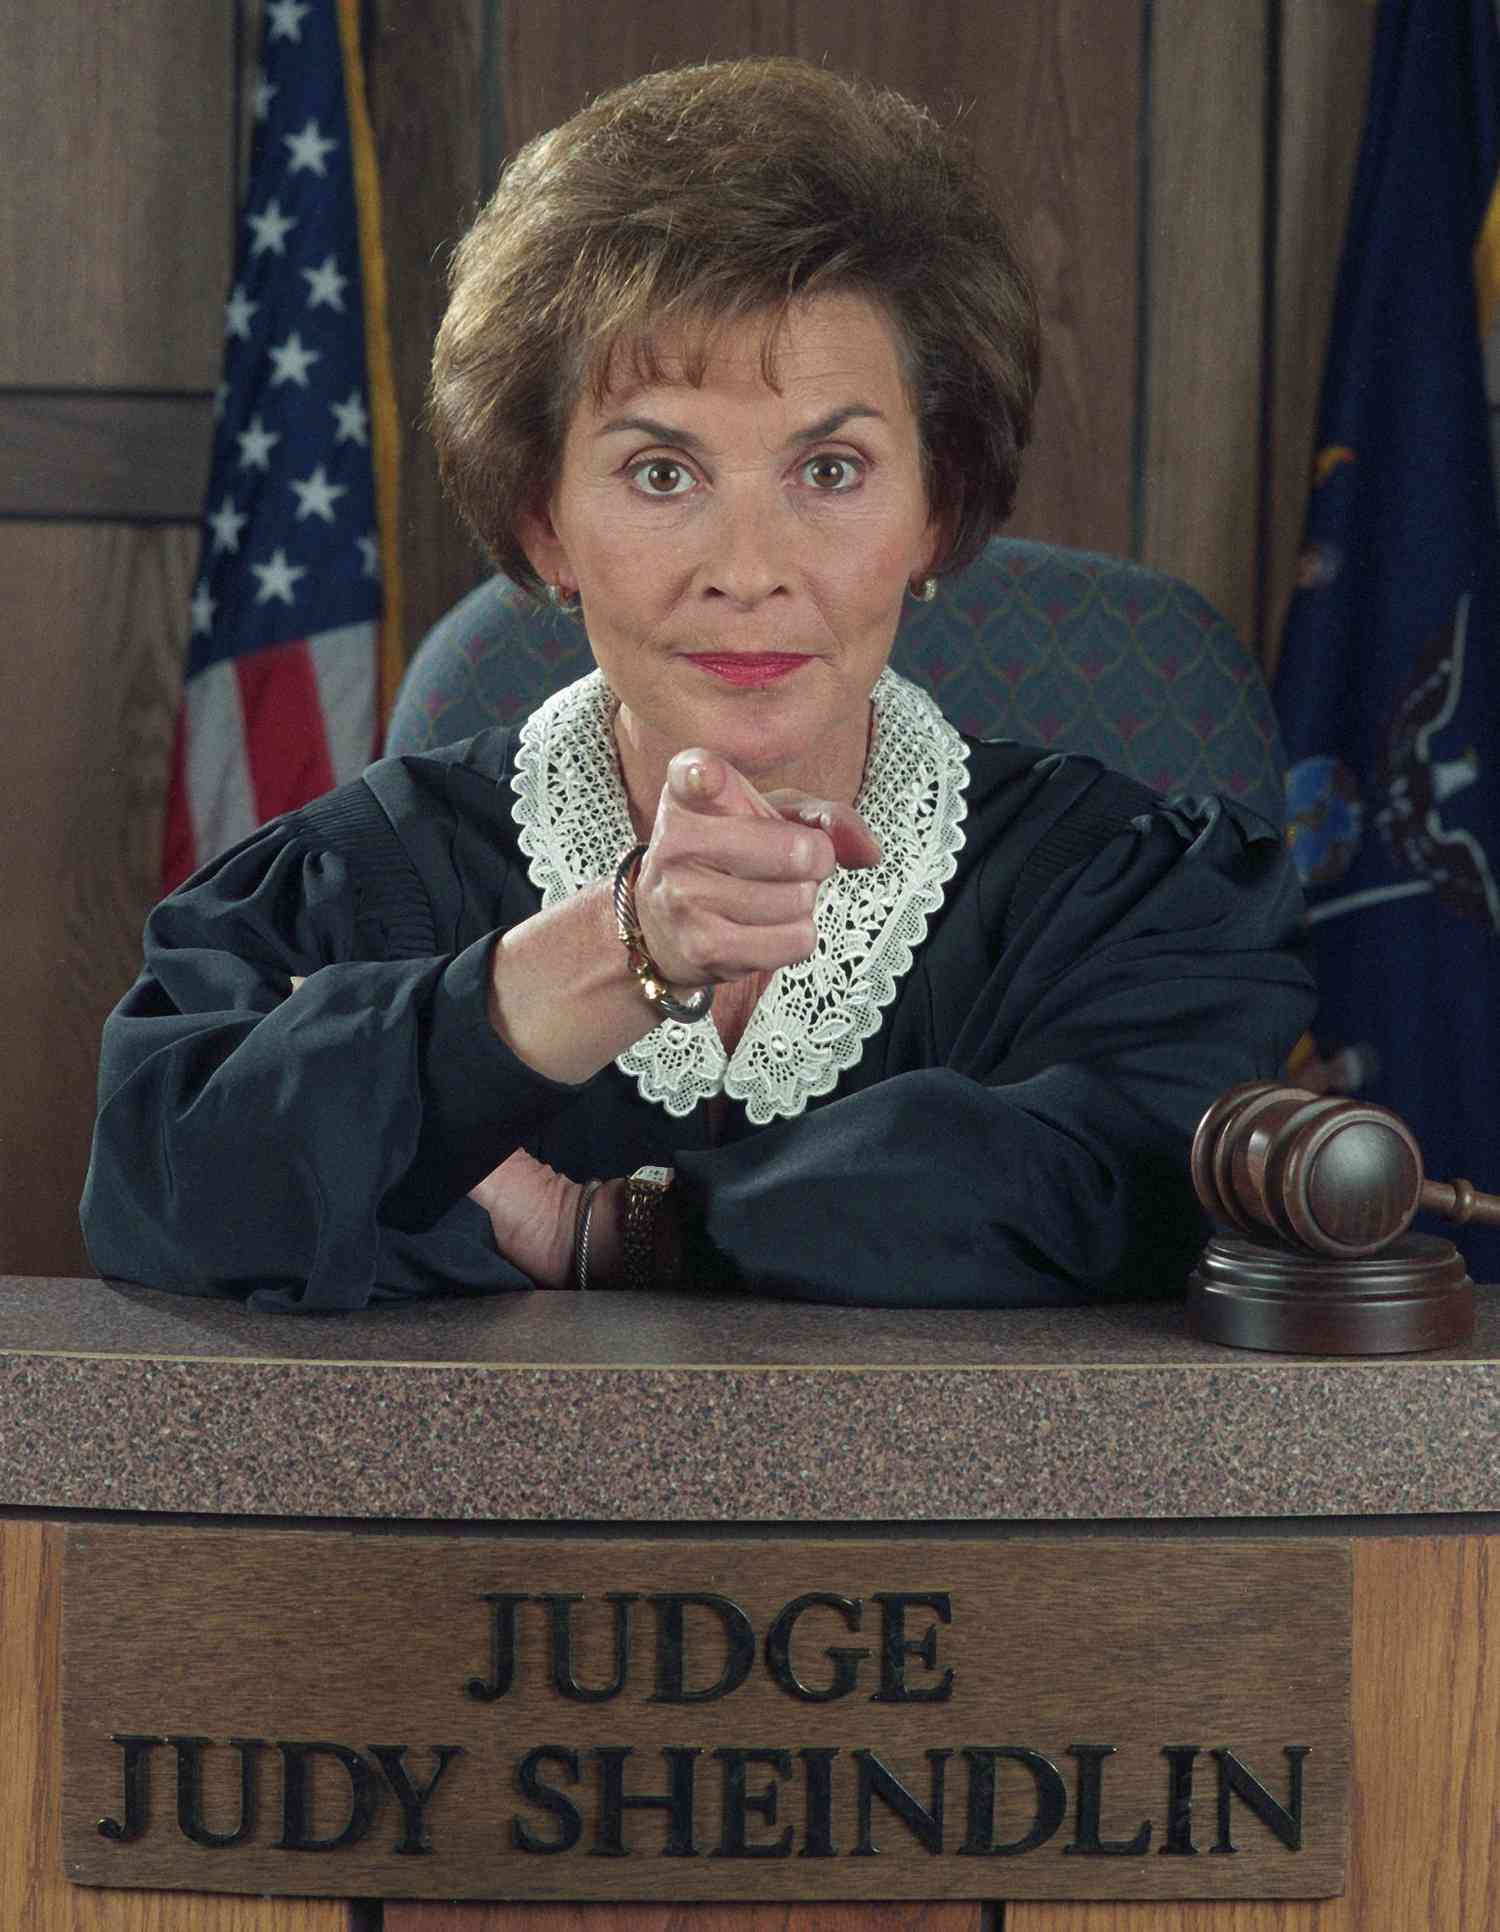 judge-judy-career-in-pics13-2000-cf174d73836e450aaaa12291ffaf9037.jpg